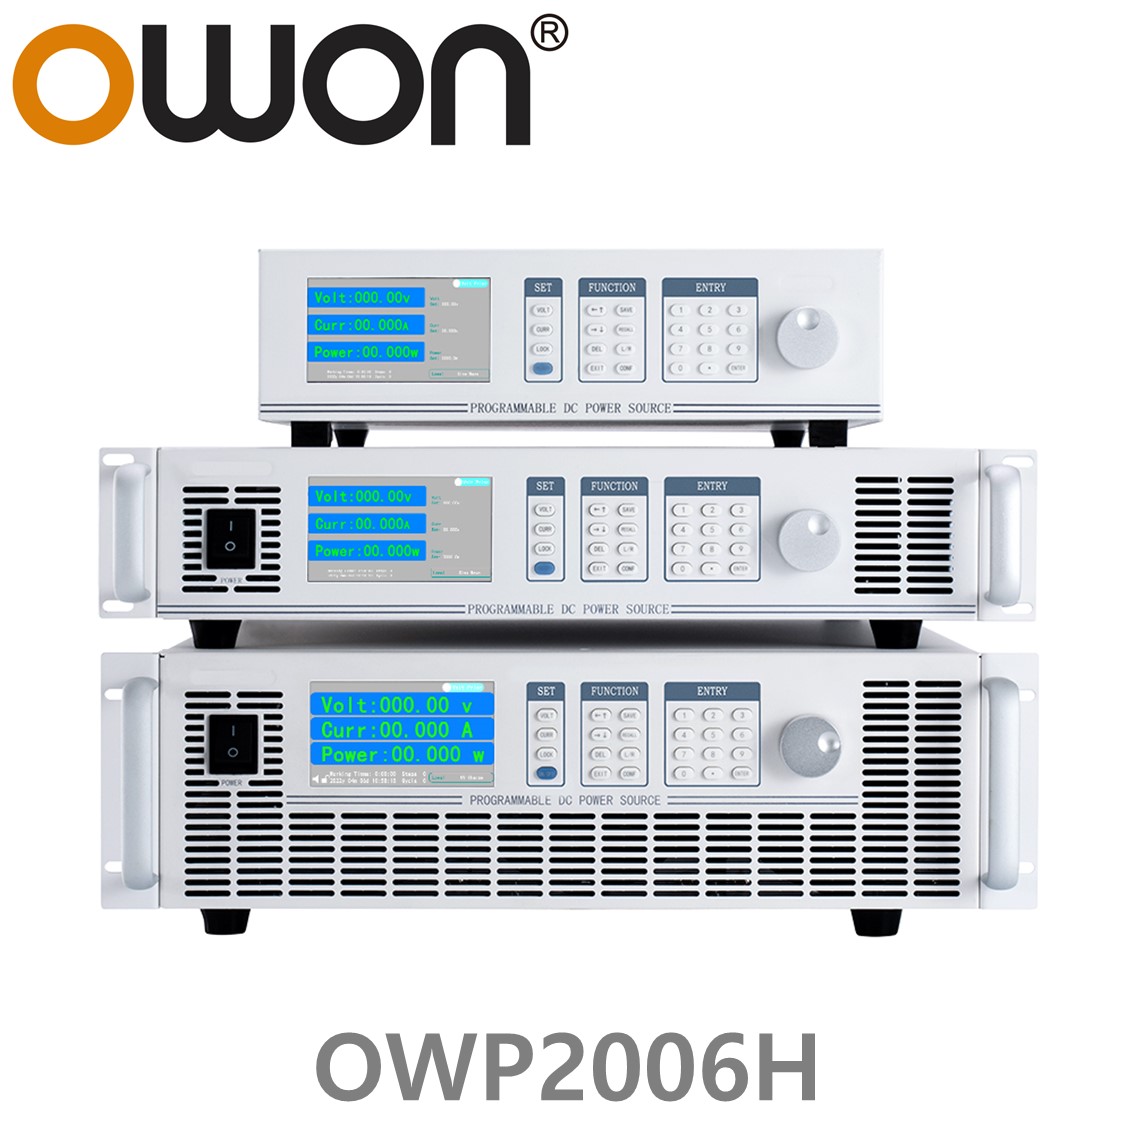 [ OWON ] OWP2006H 고전력 DC파워서플라이, 0-60.000V / 0-80.000A / 2000.0W DC전원공급장치